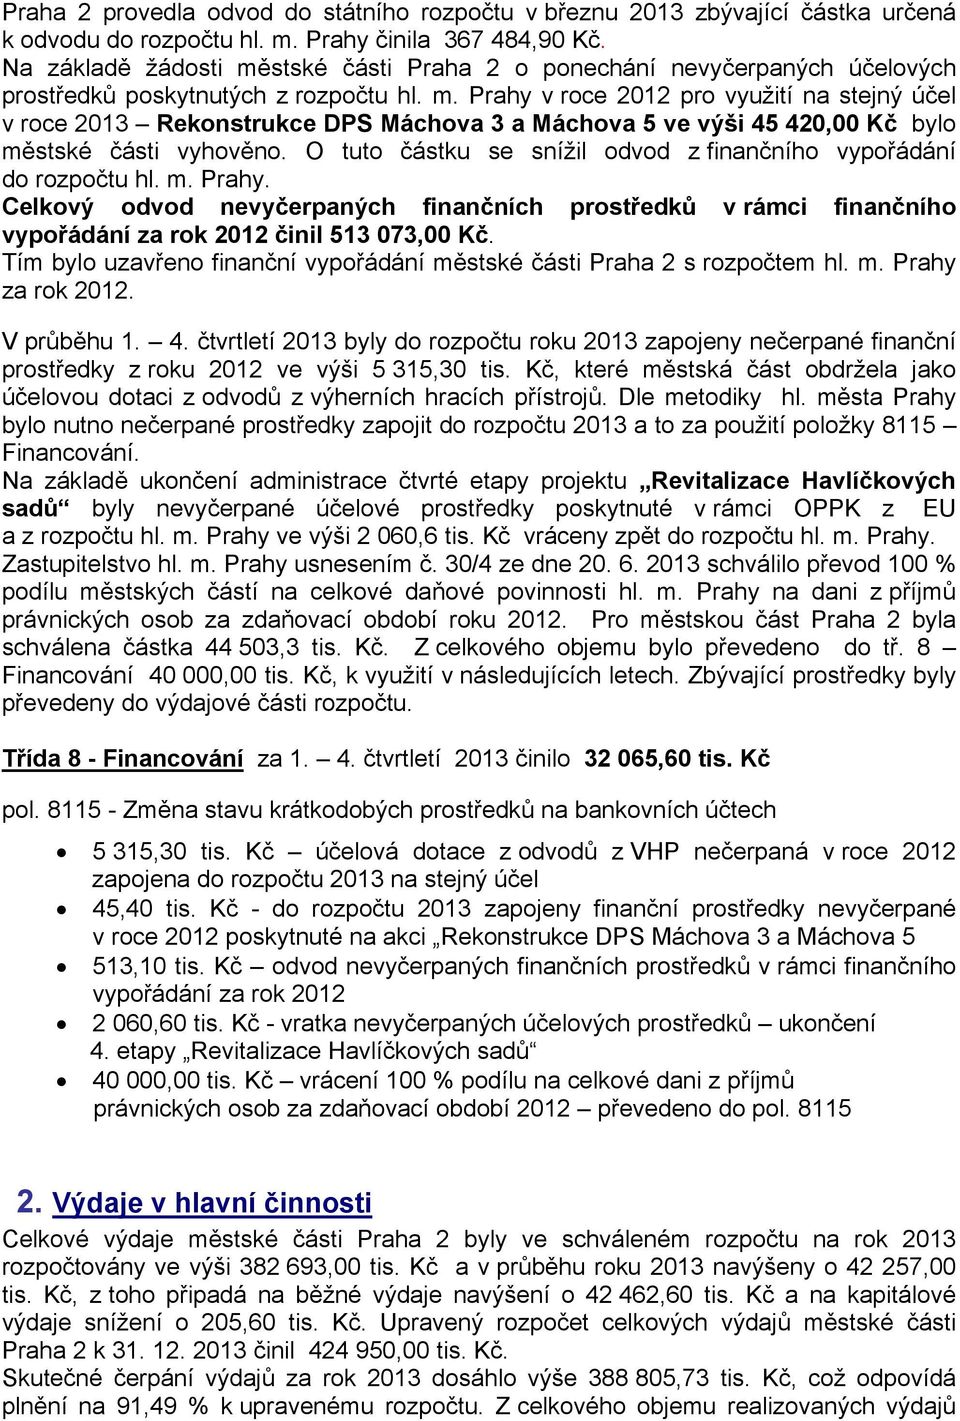 O tuto částku se snížil odvod z finančního vypořádání do rozpočtu hl. m. Prahy. Celkový odvod nevyčerpaných finančních prostředků v rámci finančního vypořádání za rok 2012 činil 513 073,00 Kč.